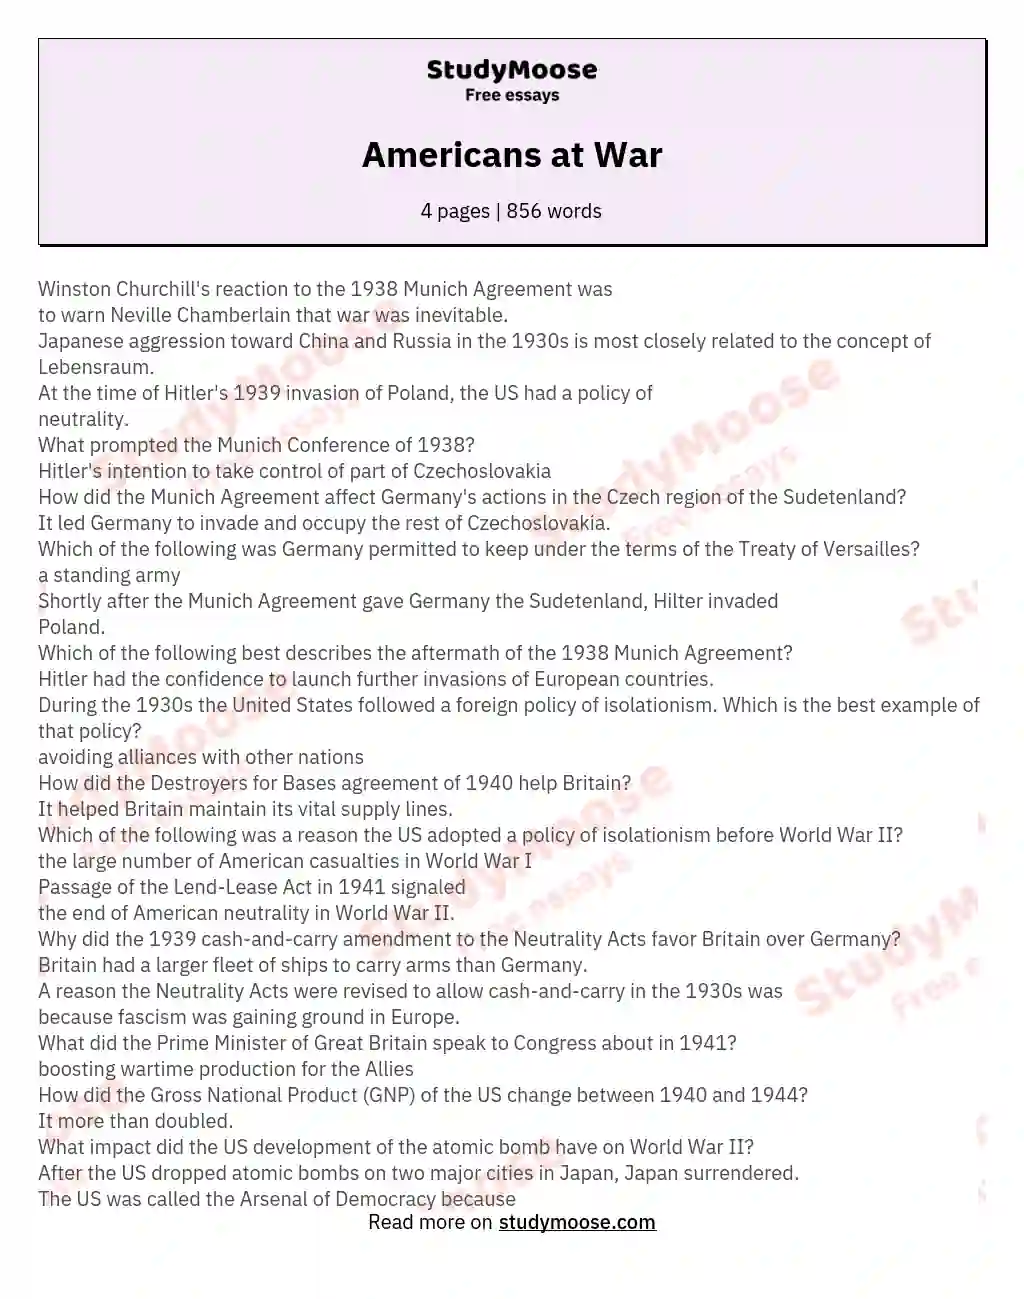 Americans at War essay